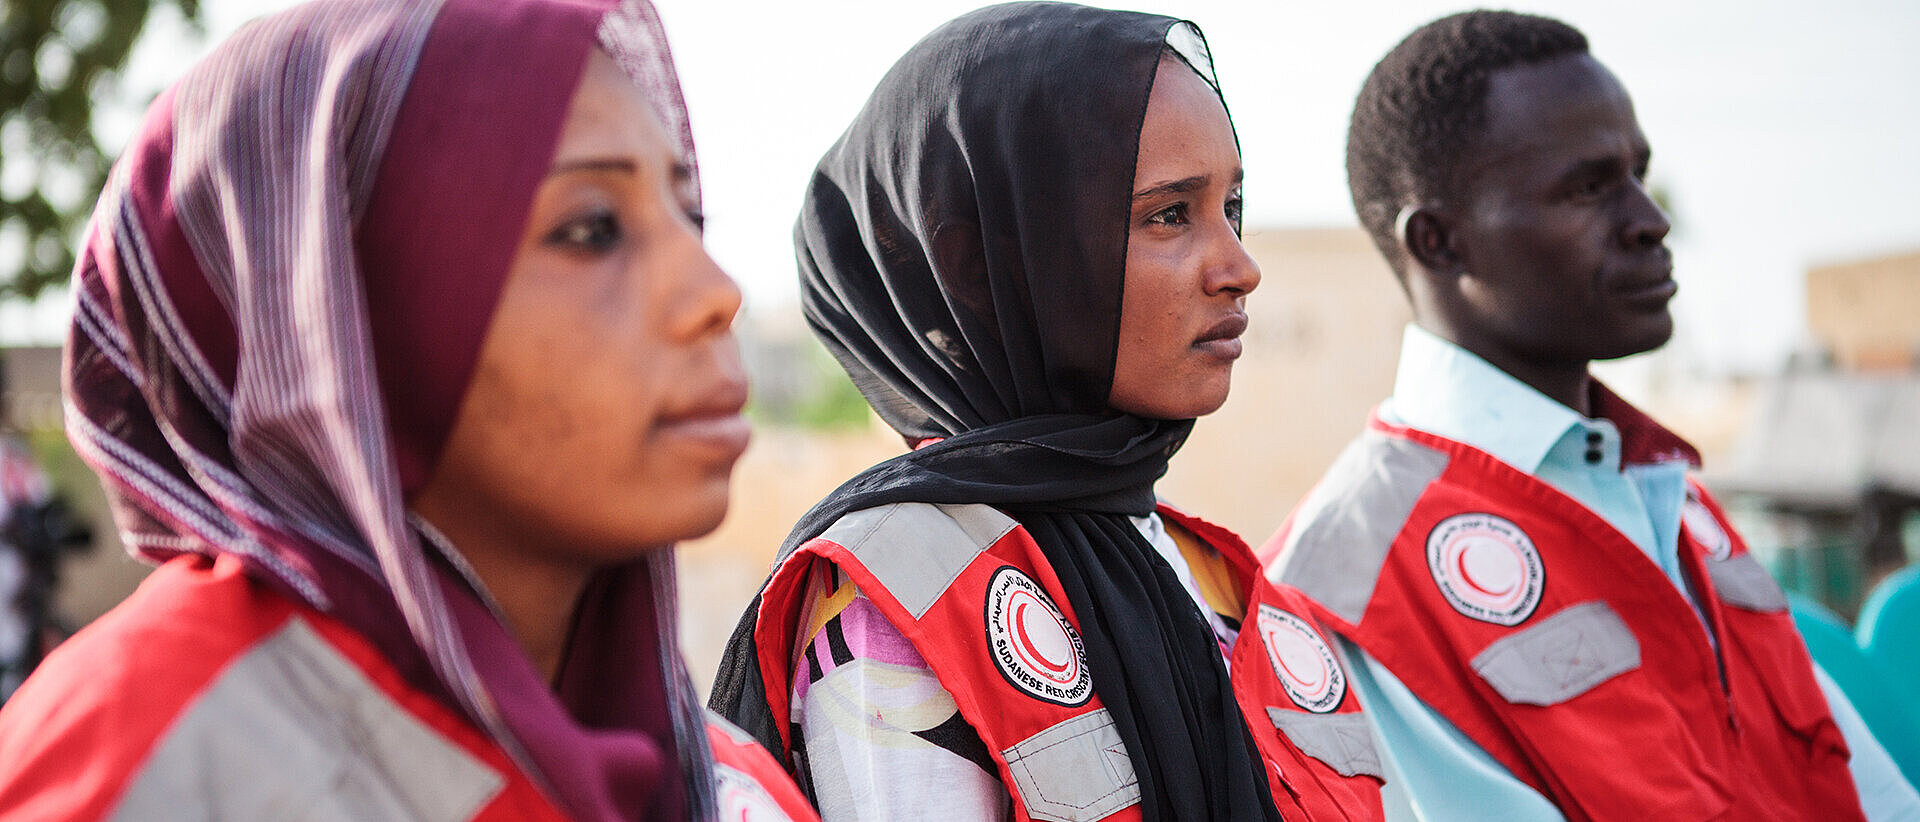 Nachhaltige Katastrophenhilfe: Ausbildung Drei Rothalbmond-Freiwilliger im Sudan